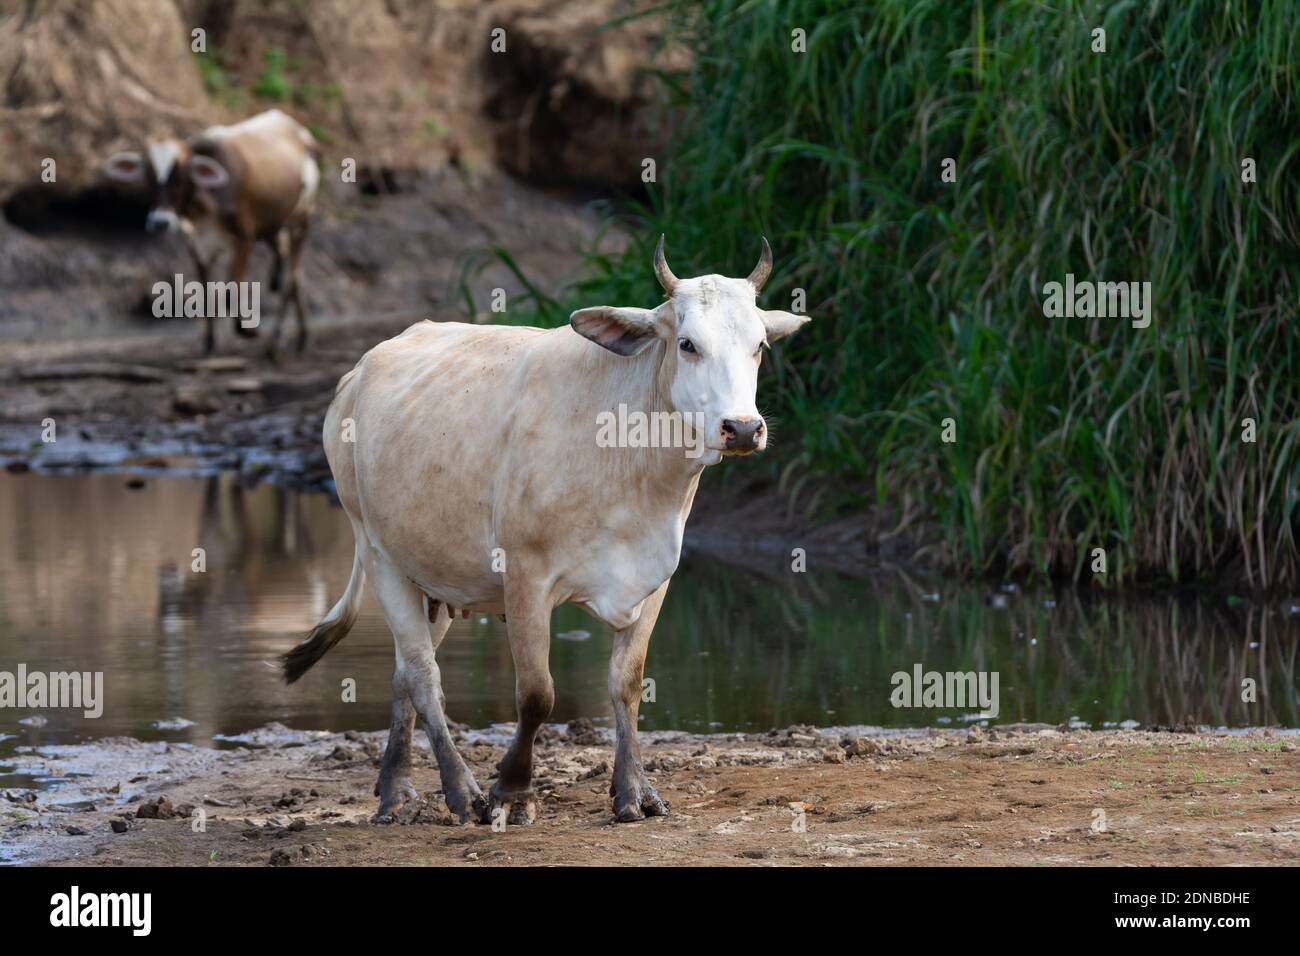 Una piccola mandria di bestiame è stata trovata vagando lungo il fiume nella giungla in Costa Rica. Foto Stock